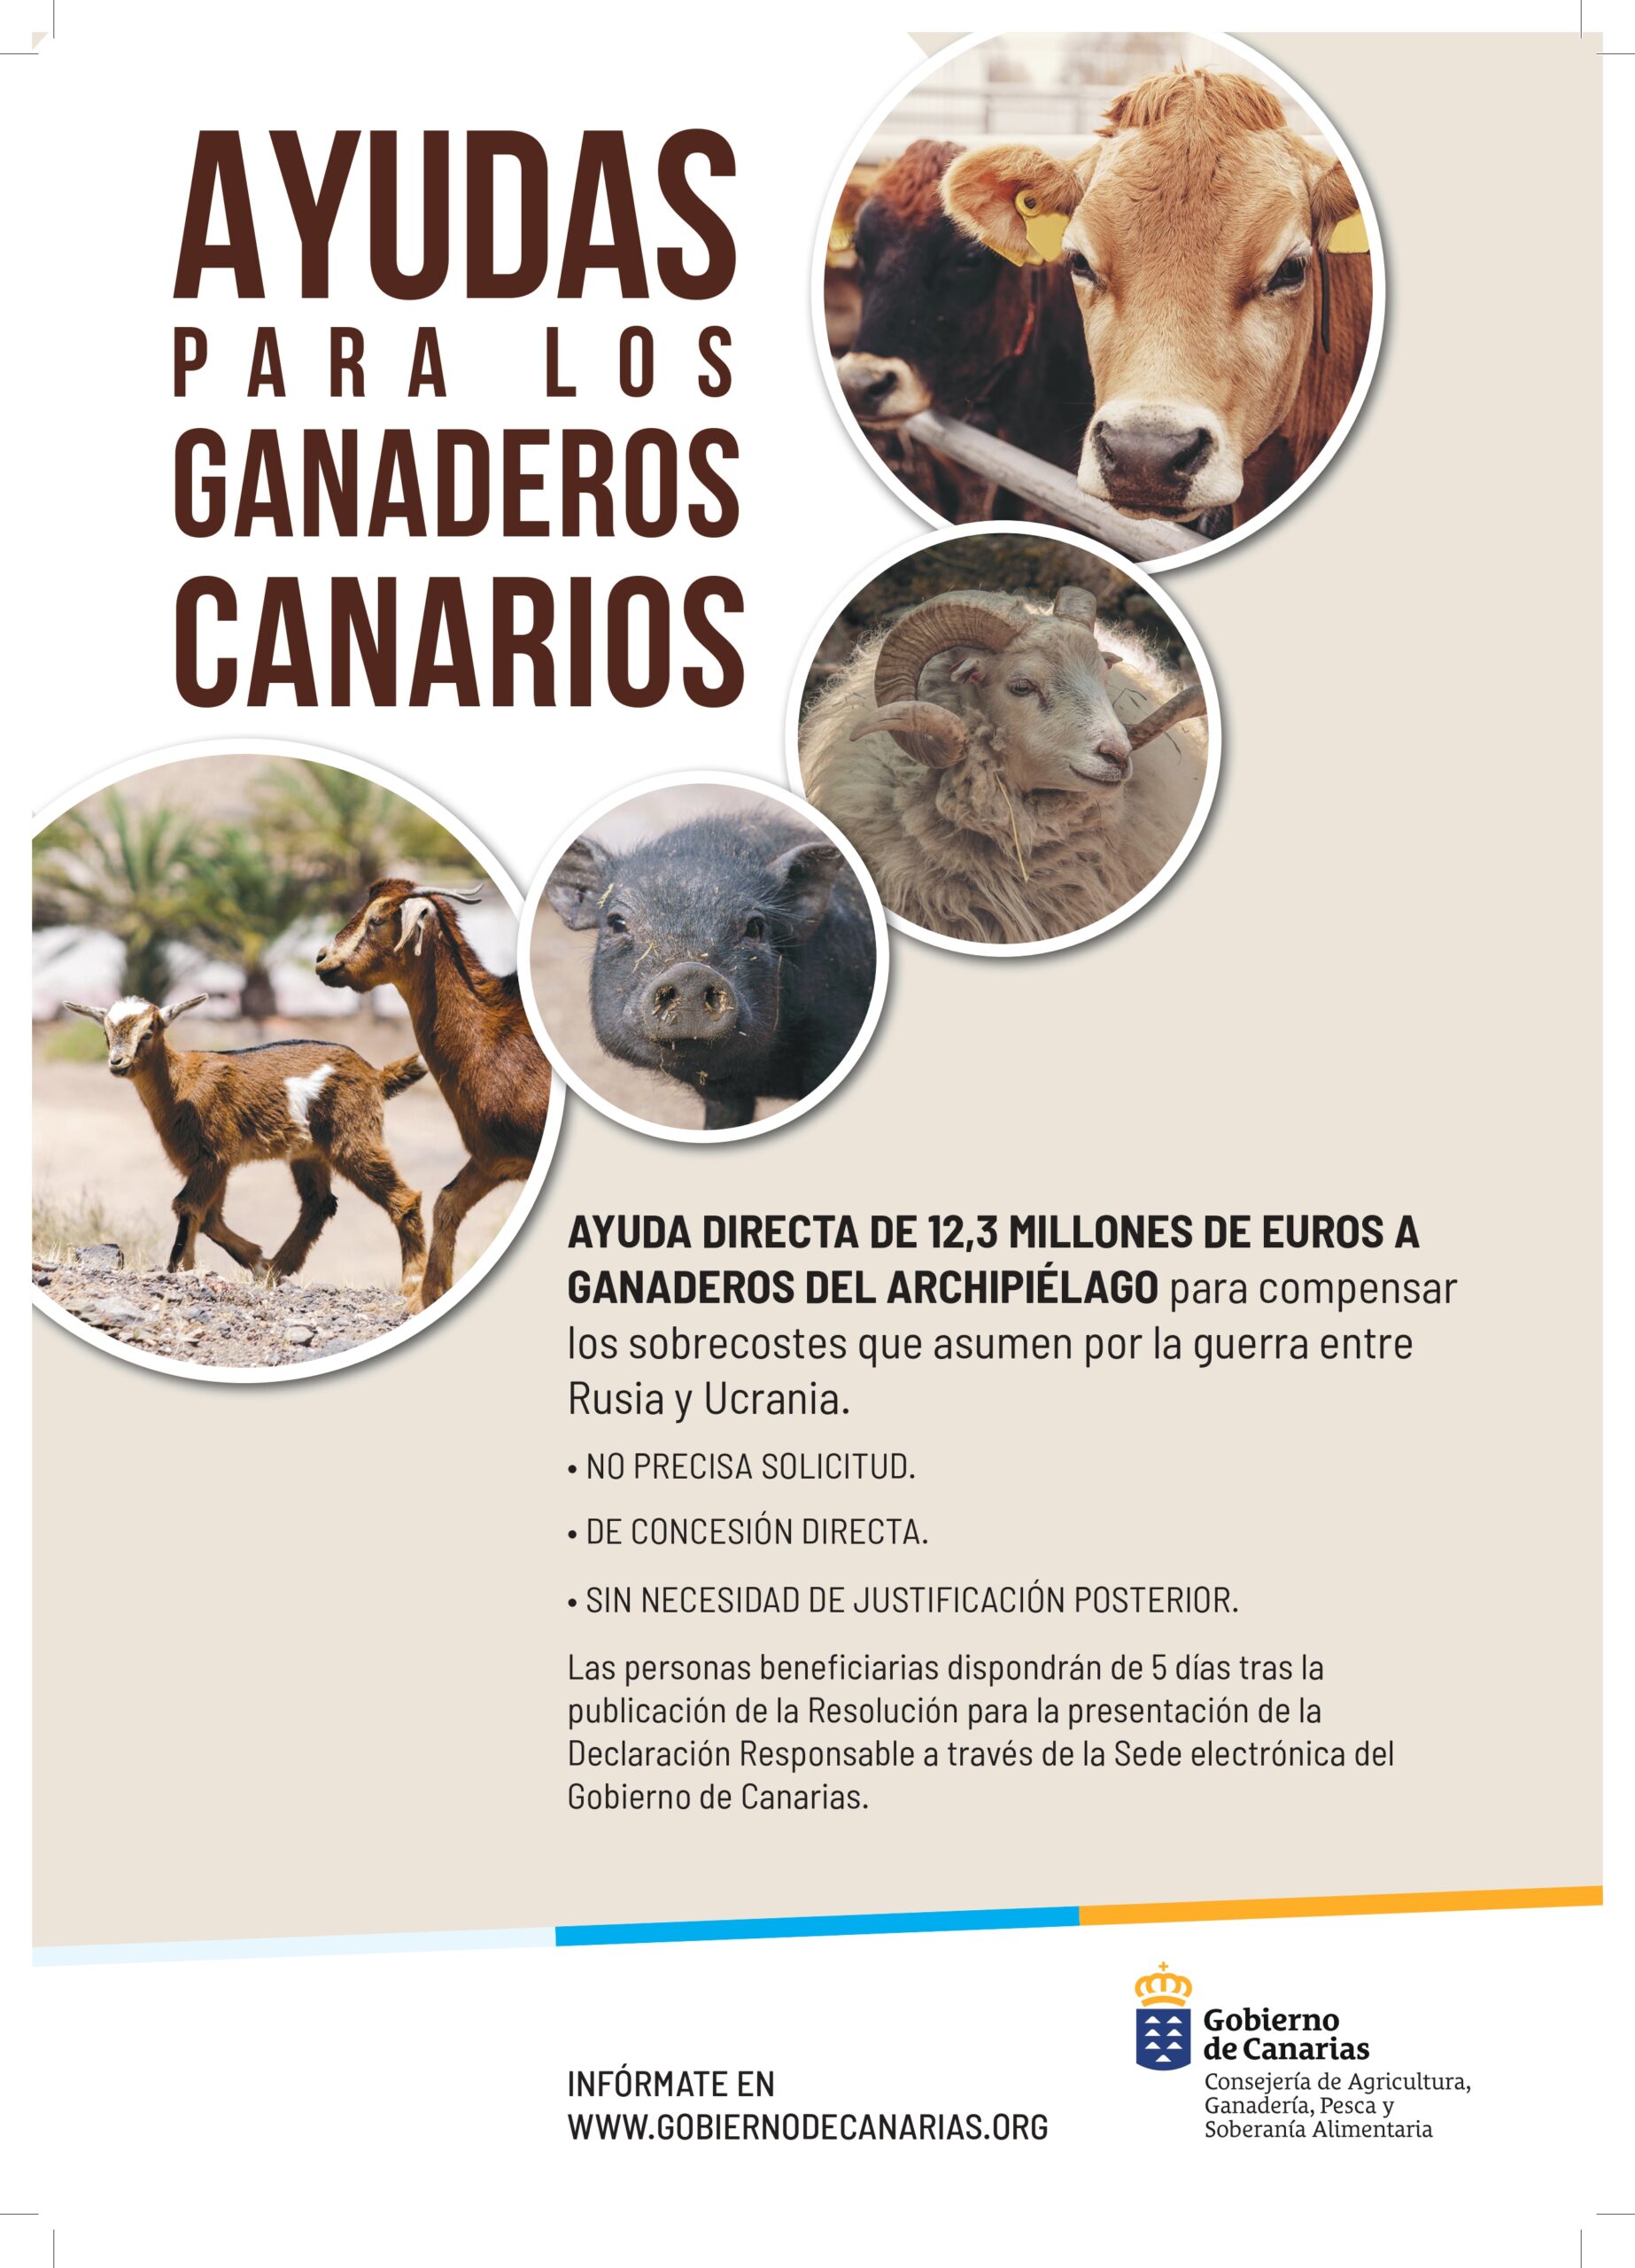 Abierto hasta el 2 de enero el plazo para aceptar la ayuda de 12,3 millones del Gobierno de Canarias a la ganadería